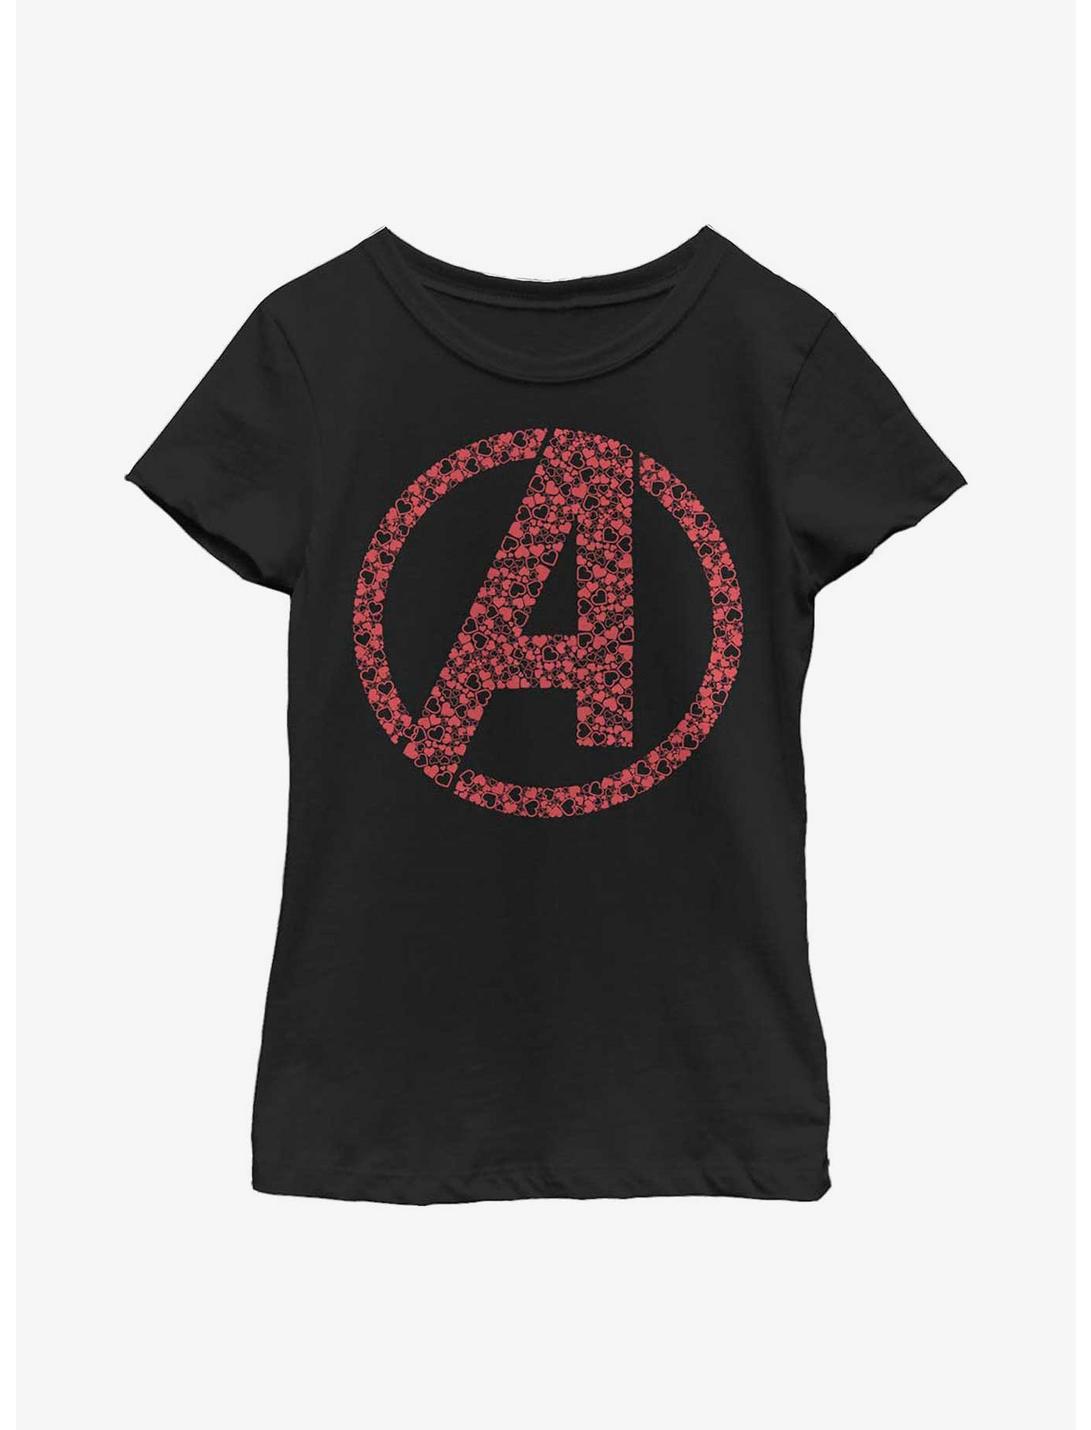 Marvel Avengers Logo Heart Fill Youth Girls T-Shirt, BLACK, hi-res